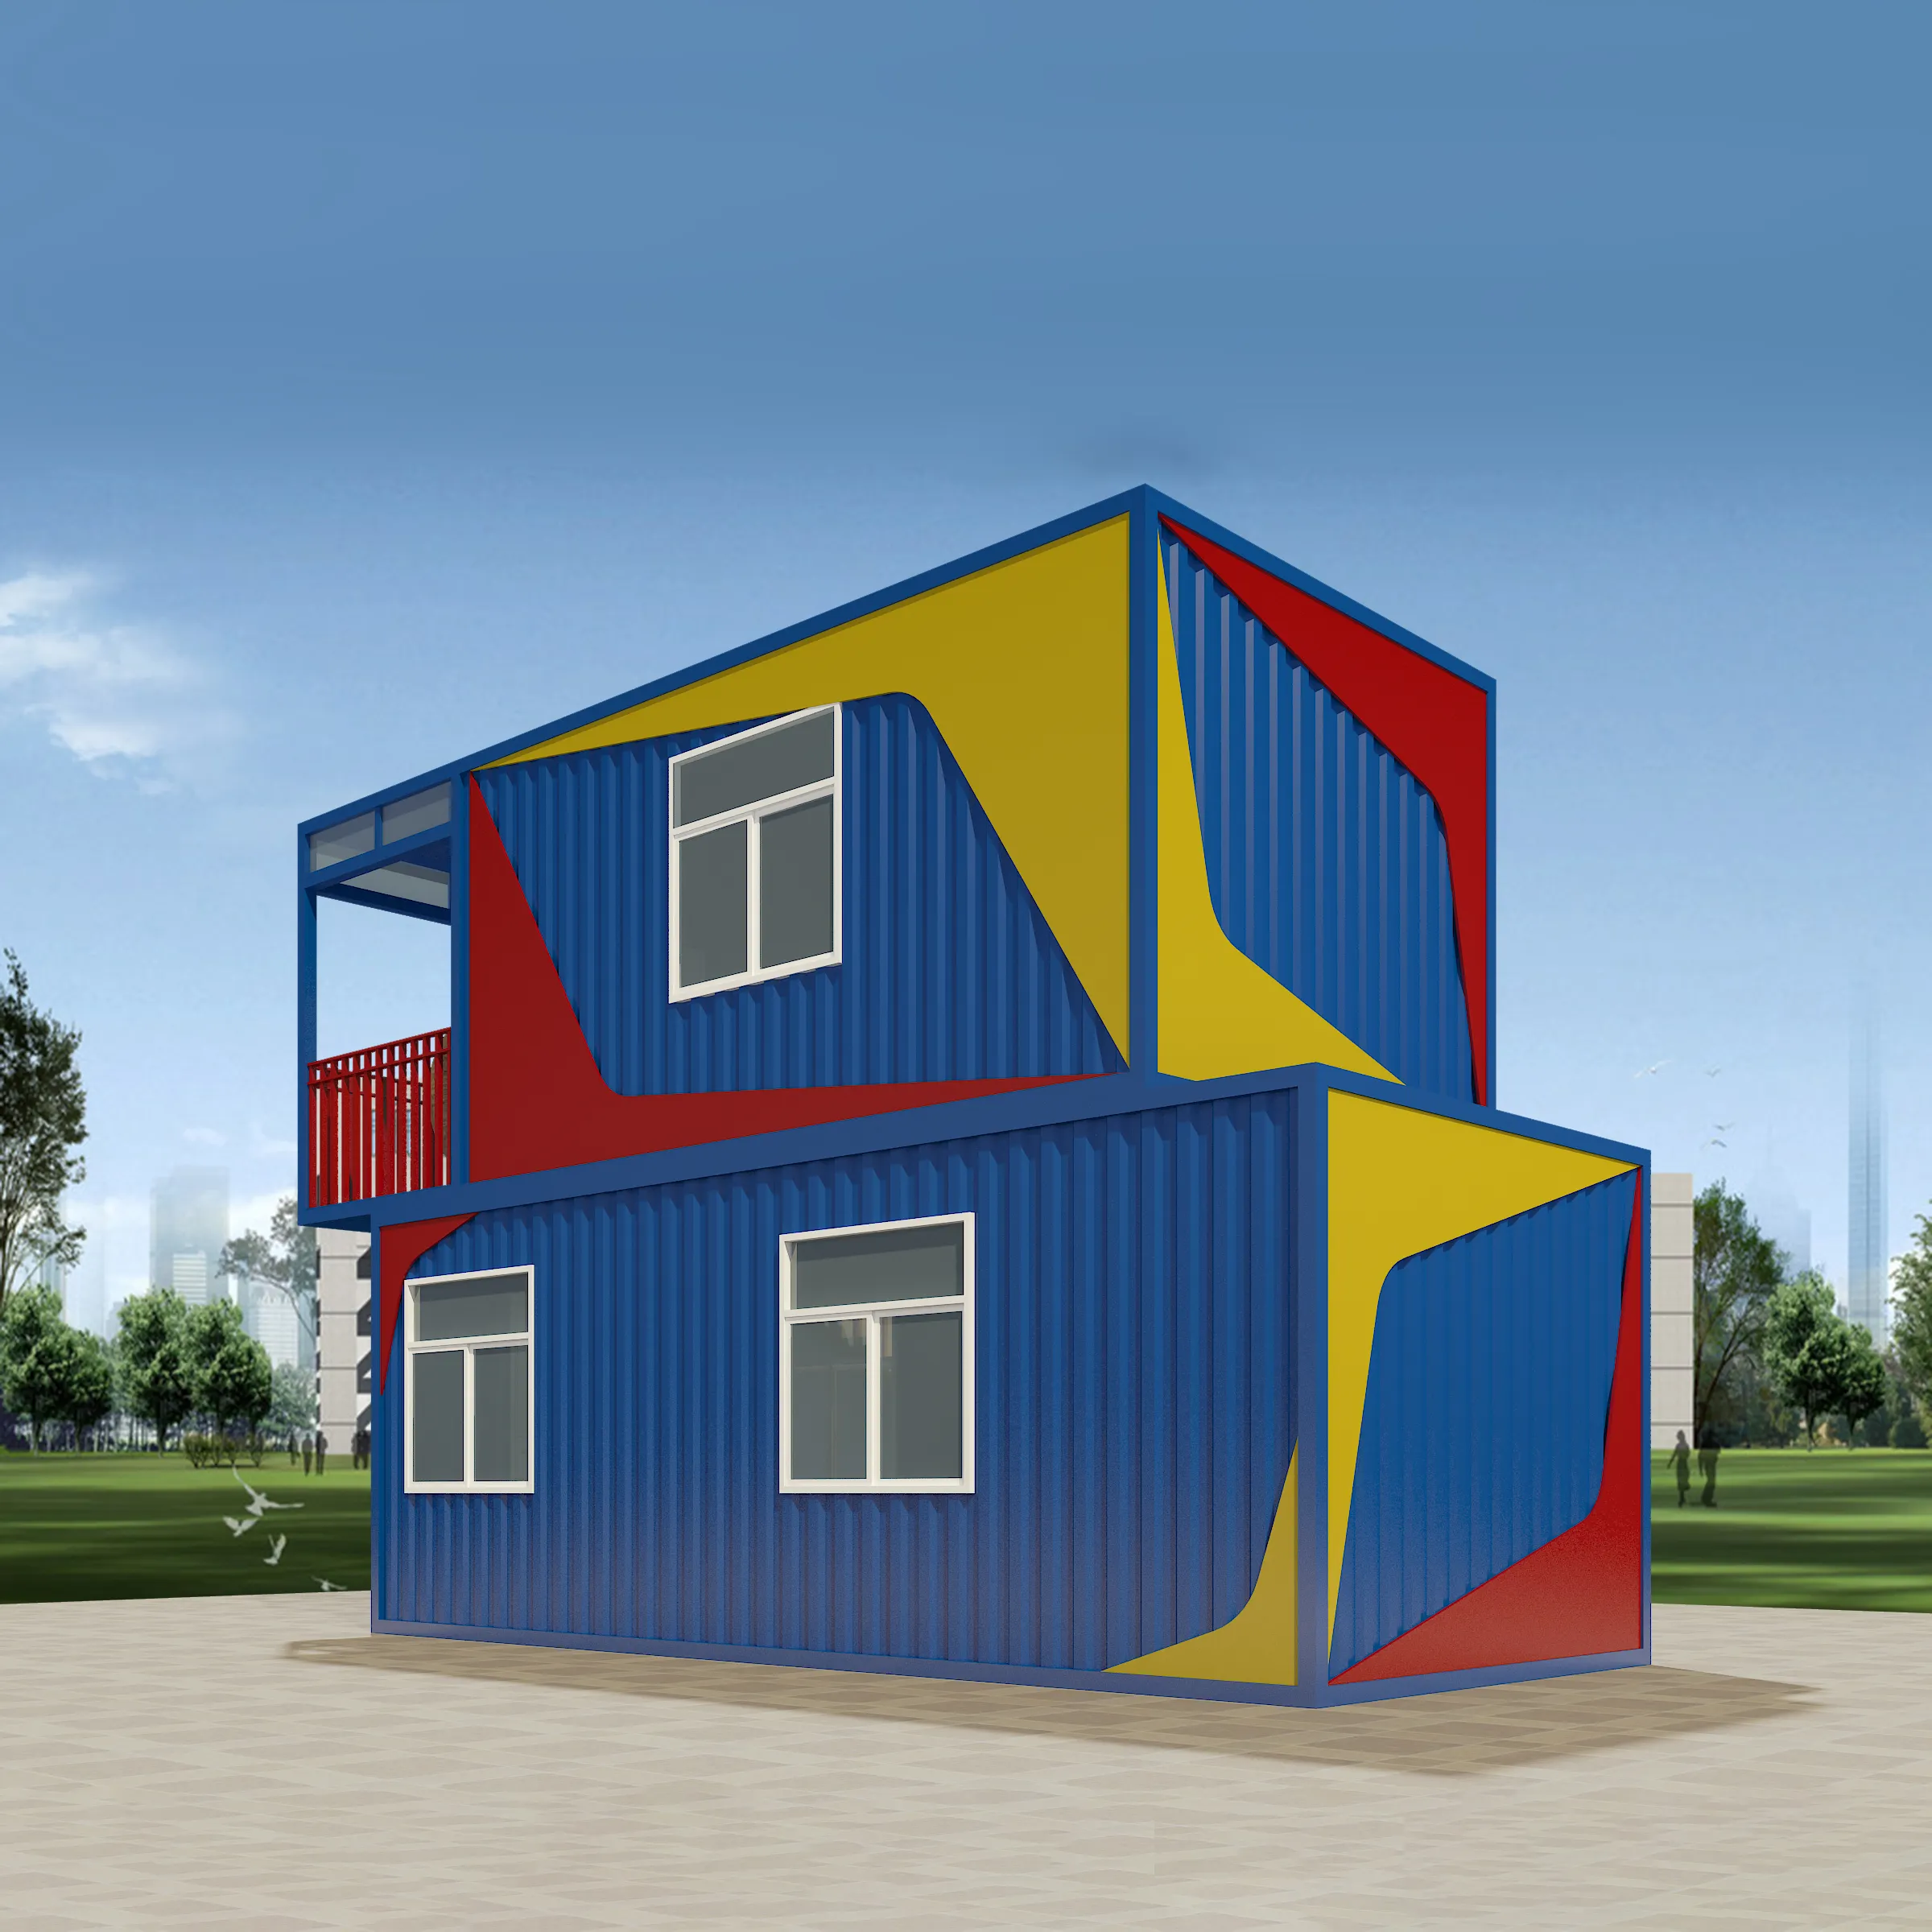 Guizu Modieuze Ontwerp Prefab Huizen, Modulaire Huizen Te Koop, Geprefabriceerde Container Thuis